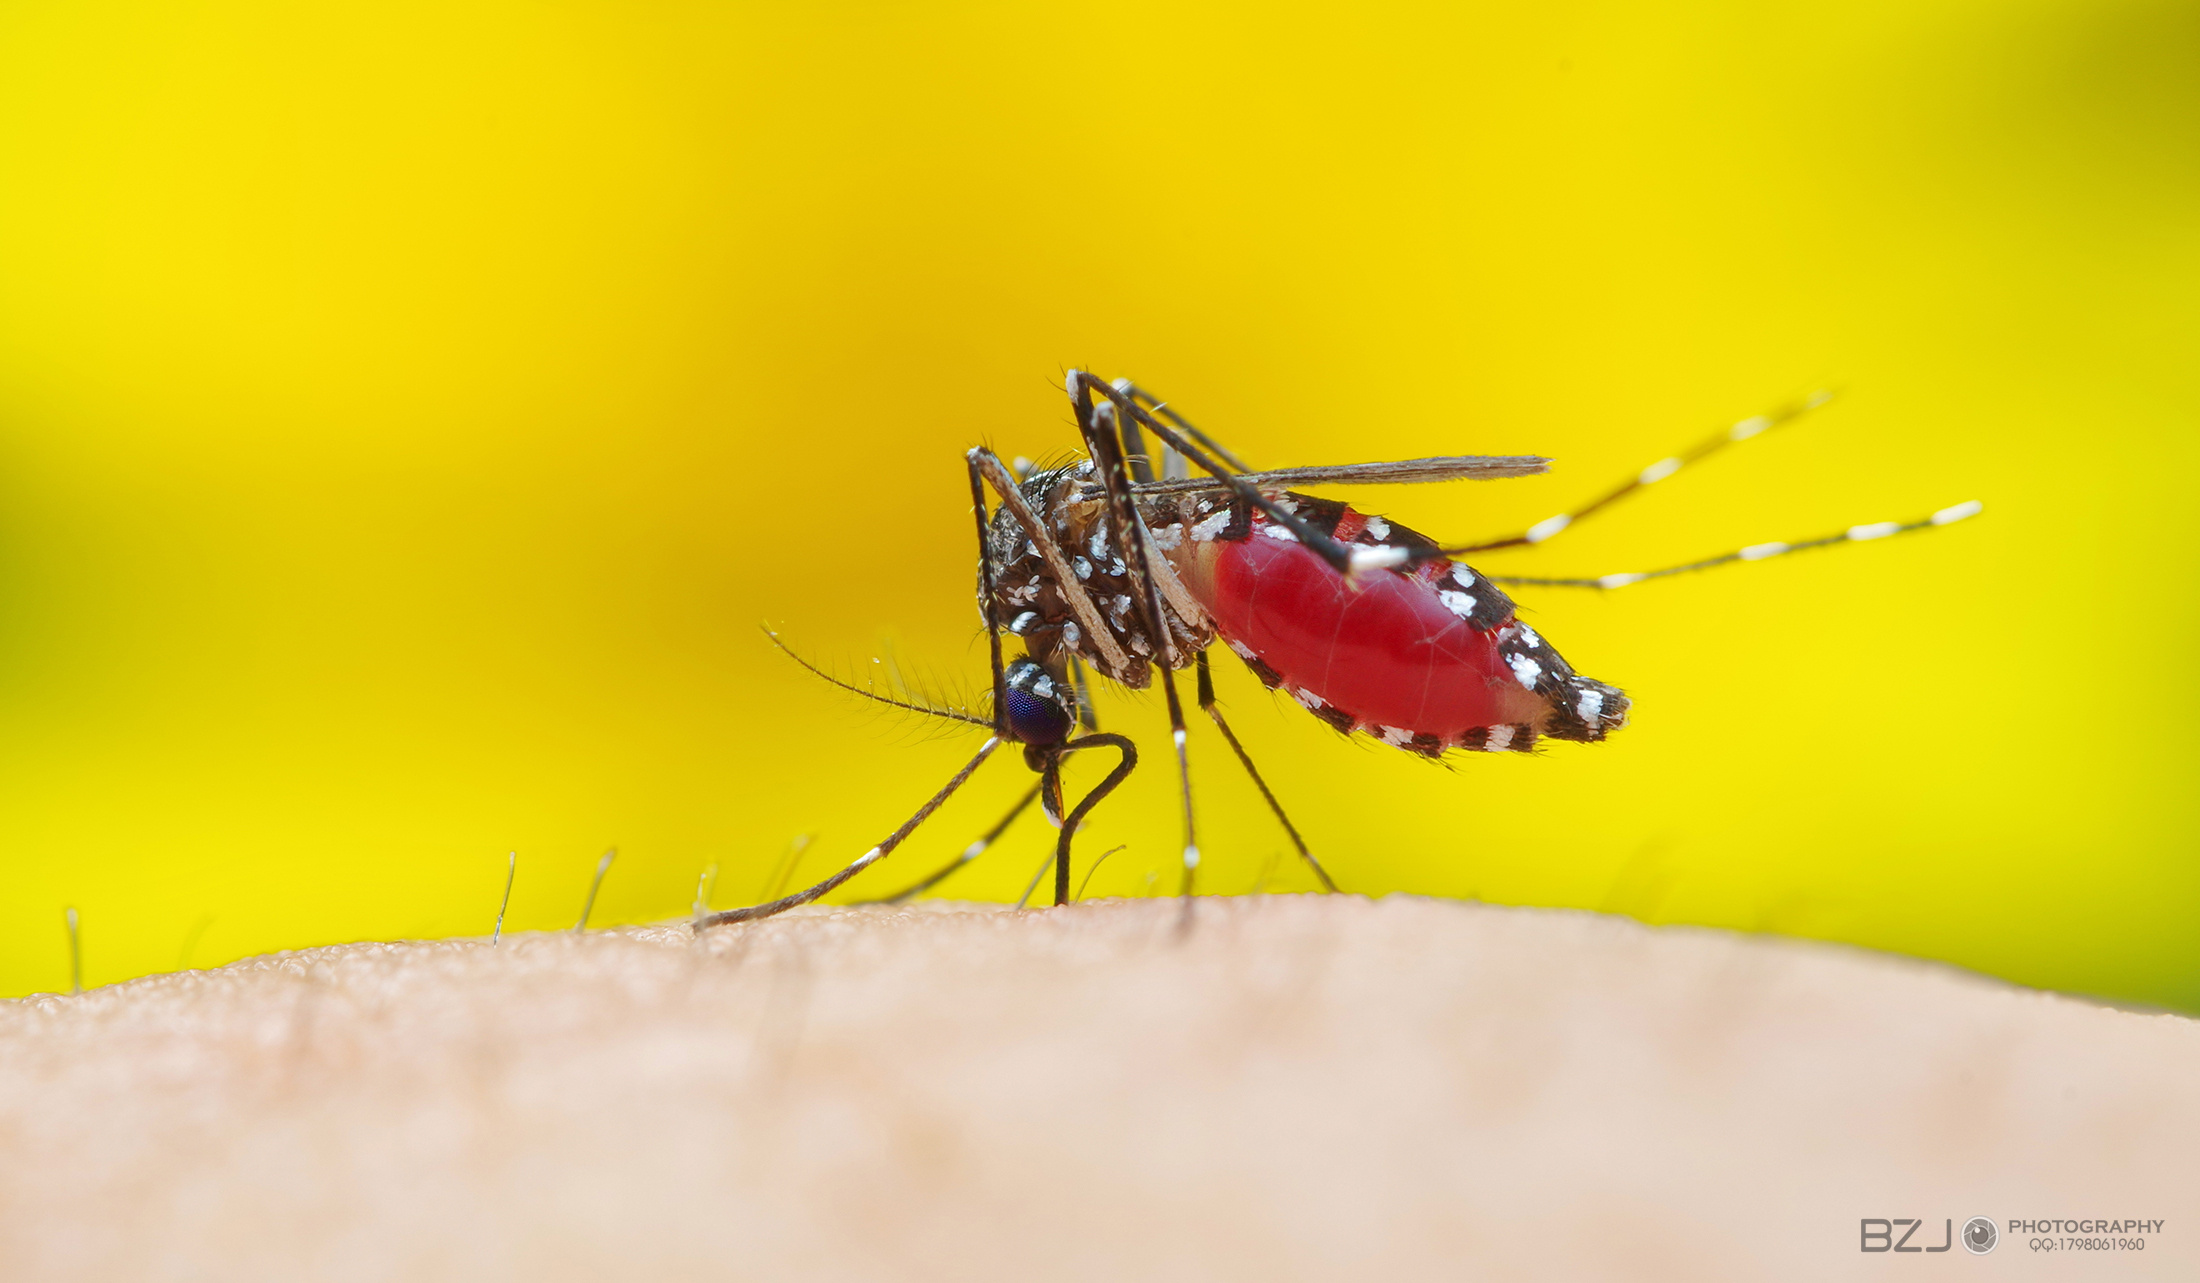 拍死蚊子會致命！？|最新文章 - 科技大觀園